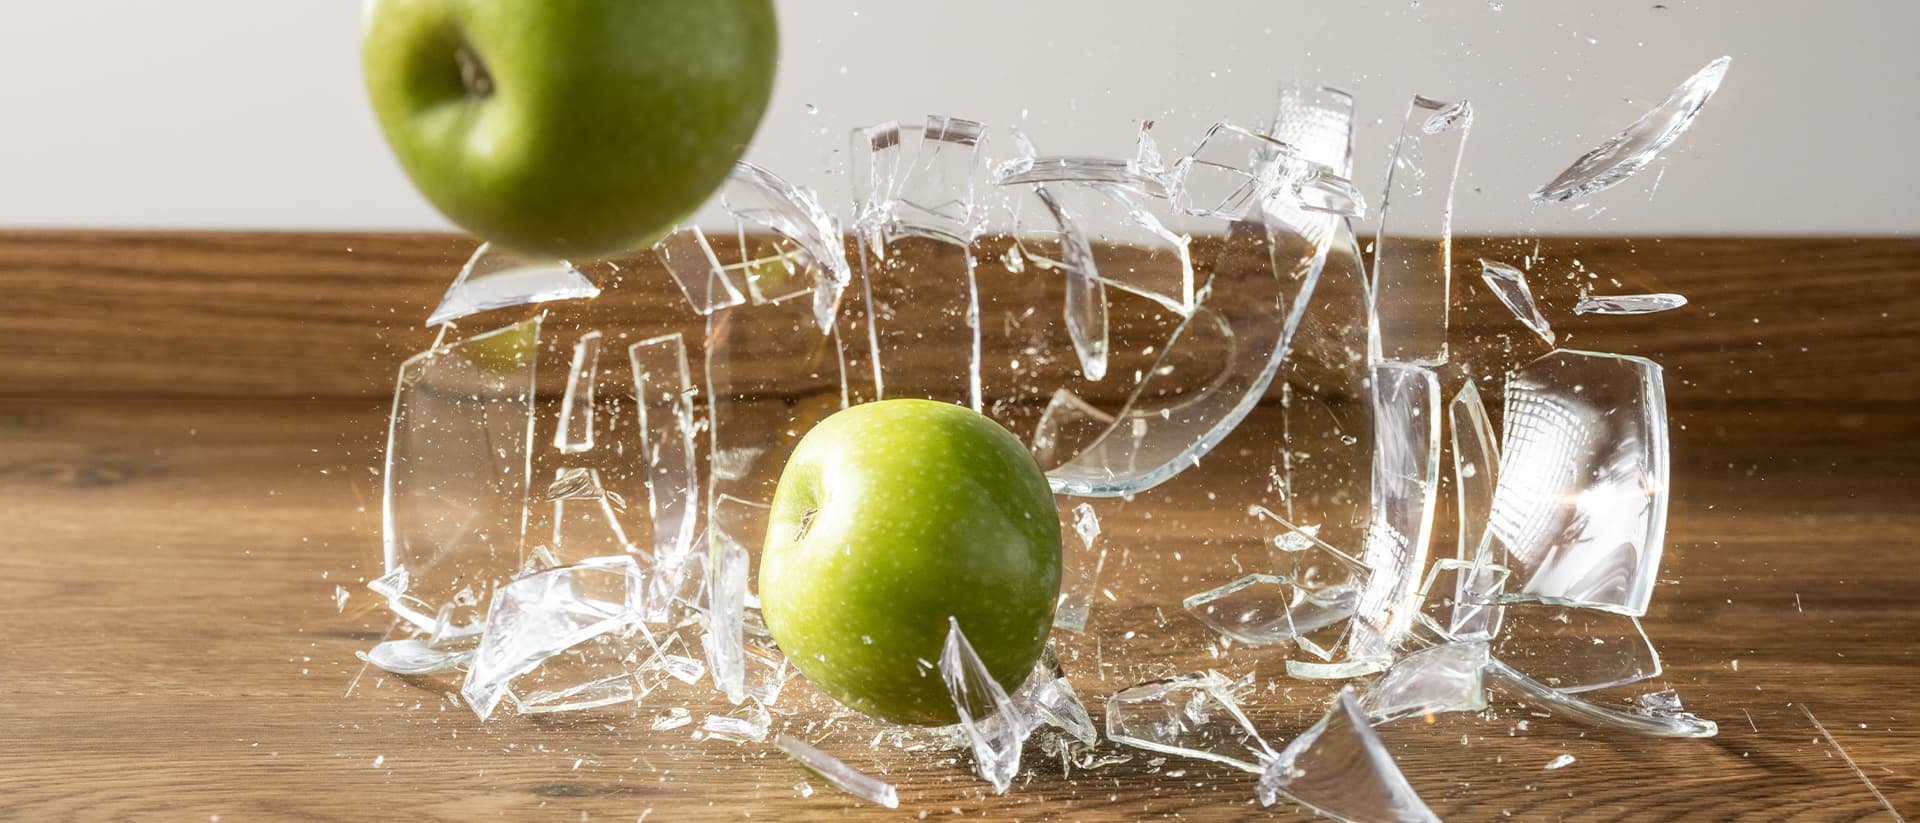 Glasvase mit Äpfeln fällt auf einen braunen Vinylboden und zerbricht